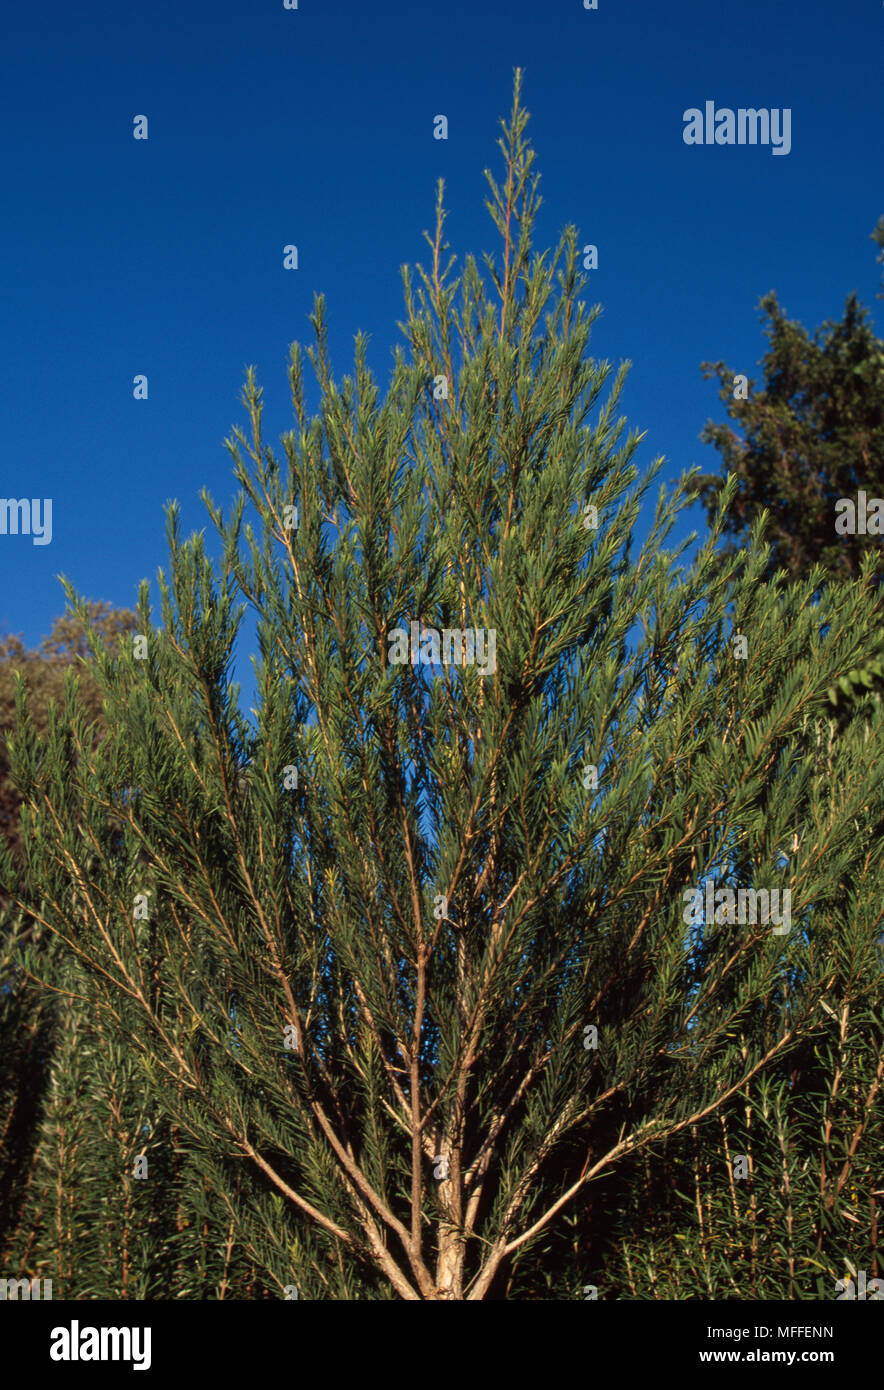 TEA TREE  Melaleuca alternifolia Small shrub  Extracted oil has a variety of medicinal uses                >> Stock Photo